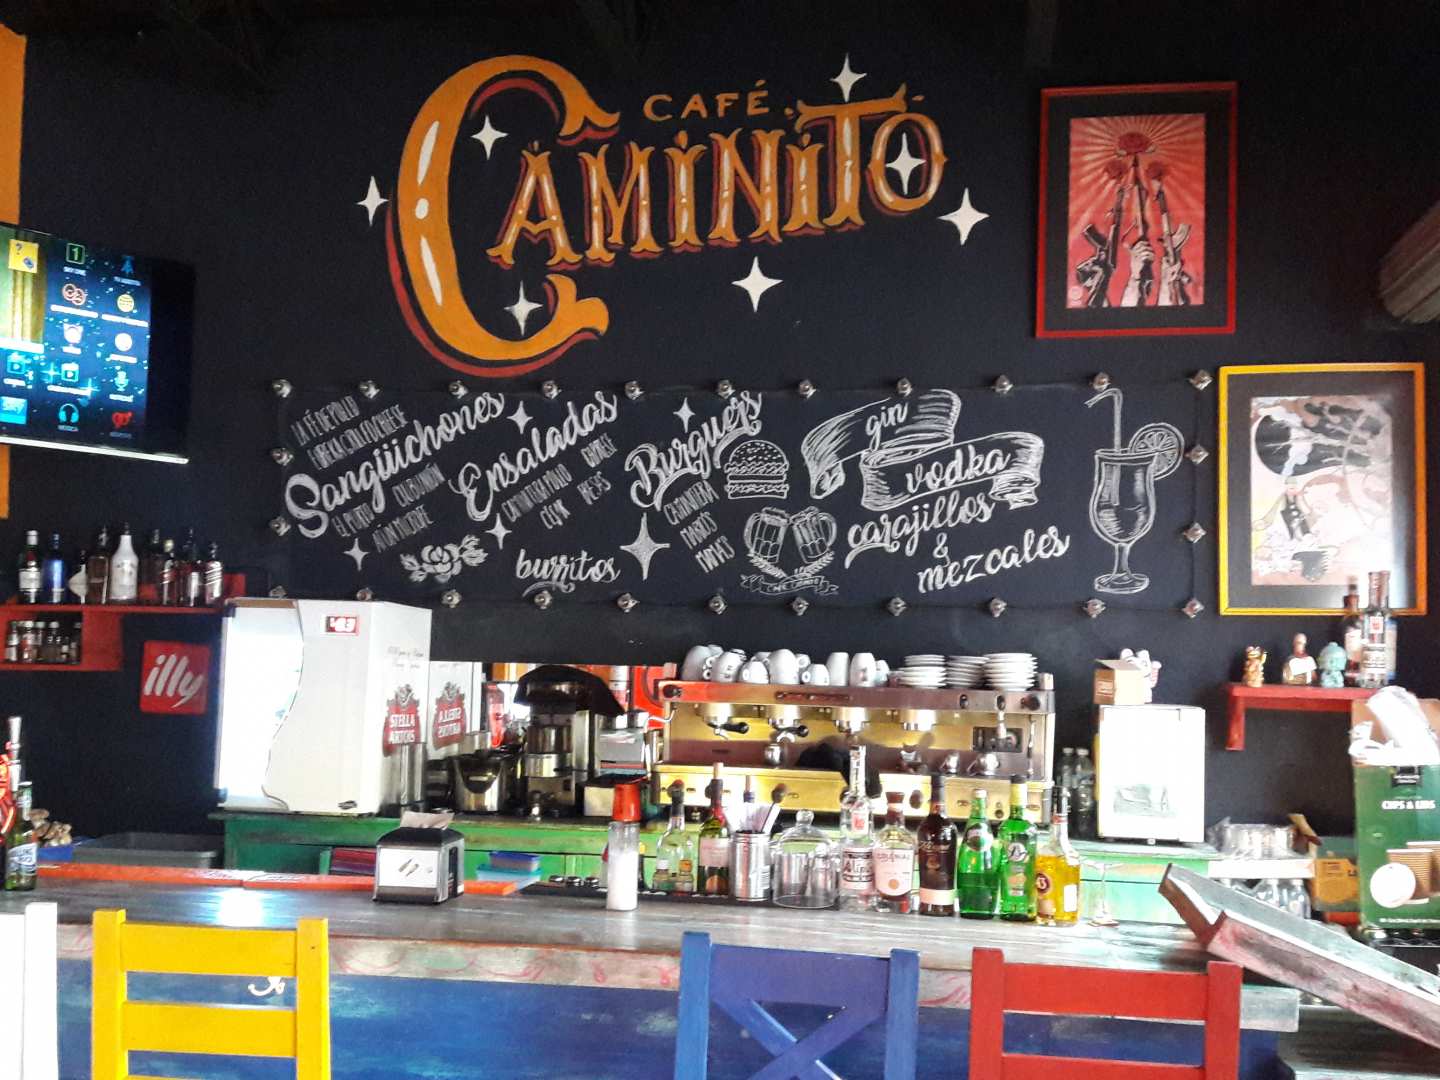 Cafe Caminito